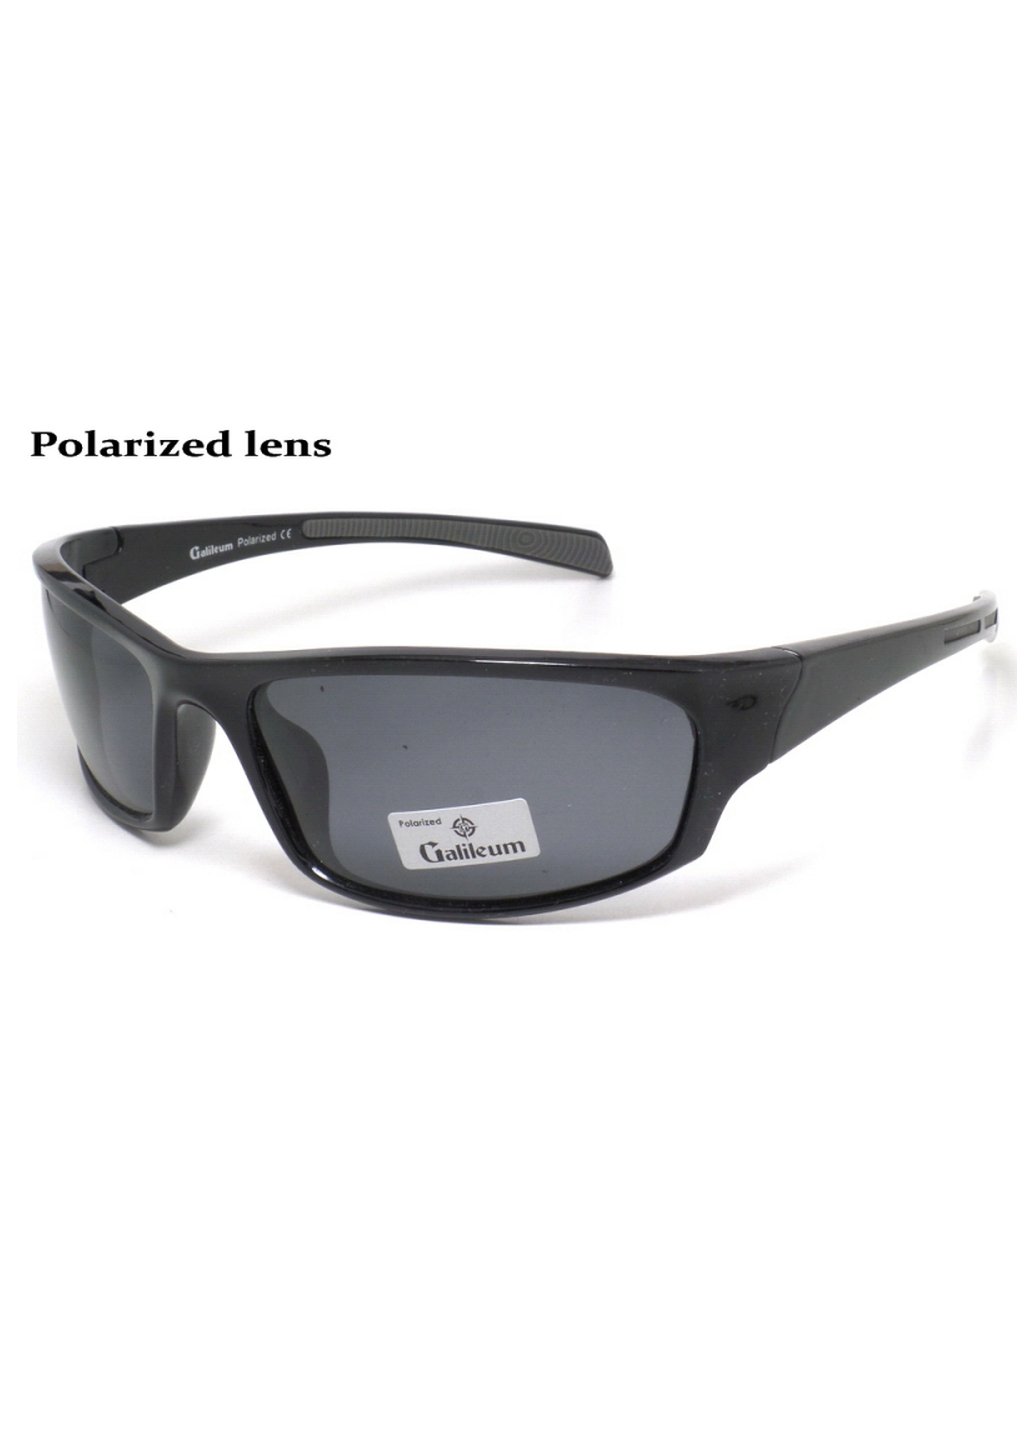 Купить Спортивные очки с поляризацией Galileum 125010 в интернет-магазине